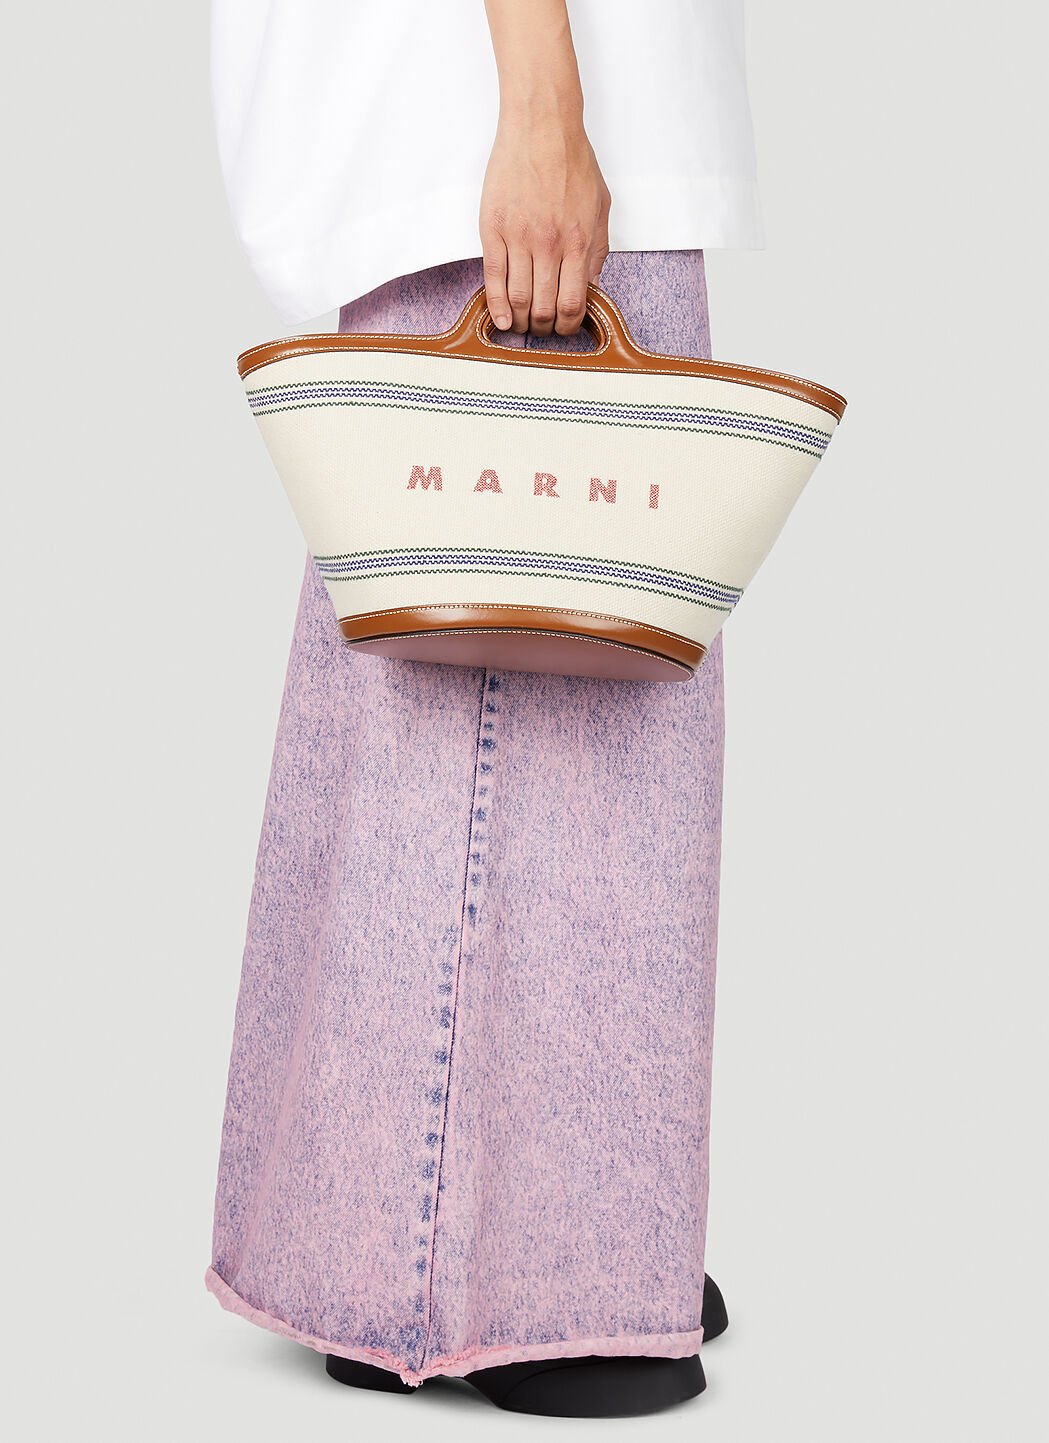 Marni Tropicalia Small Handbag Pink mni0255017